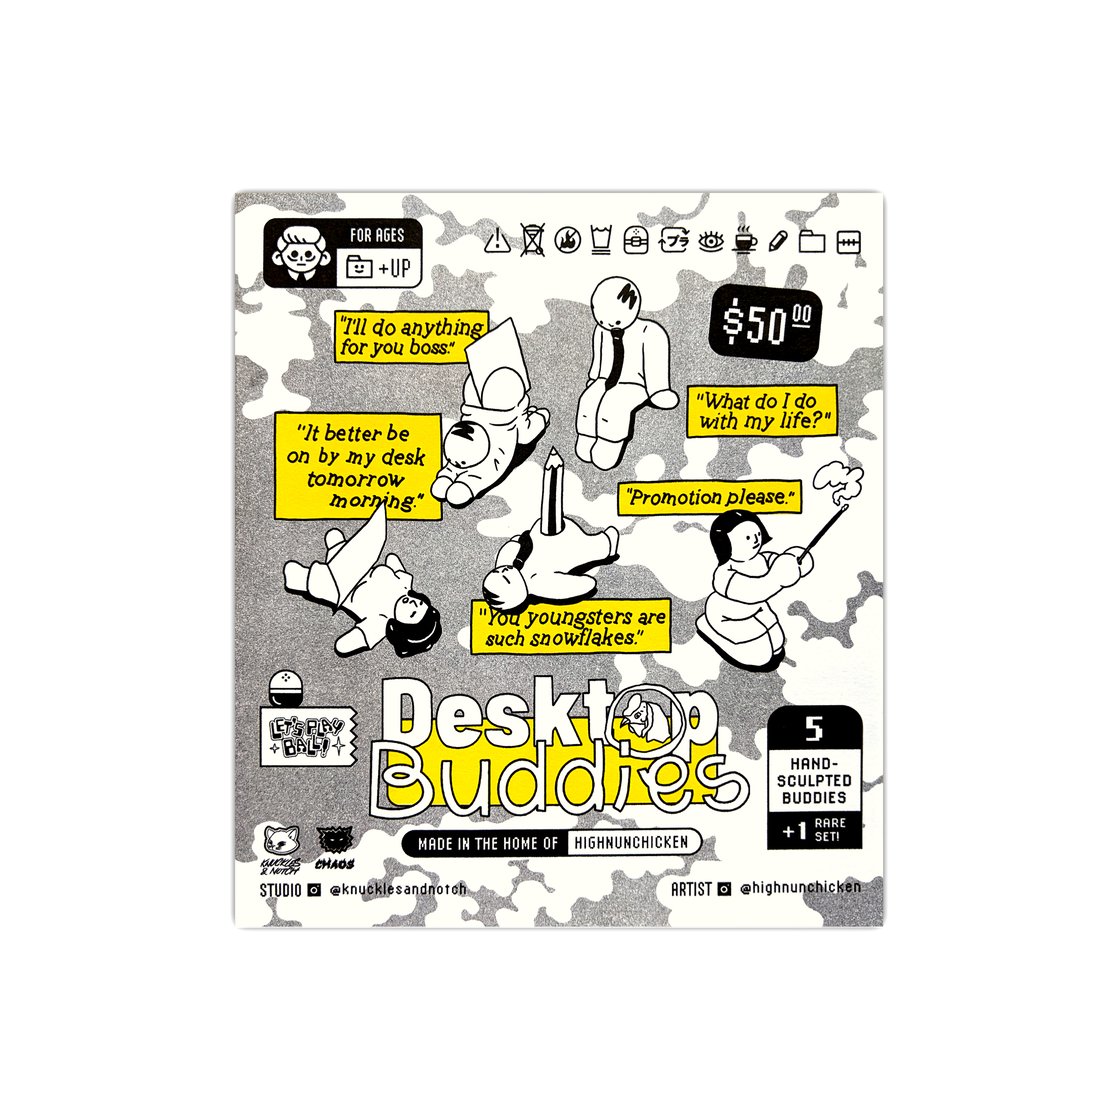 Image of Desktop Buddies (highnunchicken) – Gachapon Poster by Knuckles & Notch